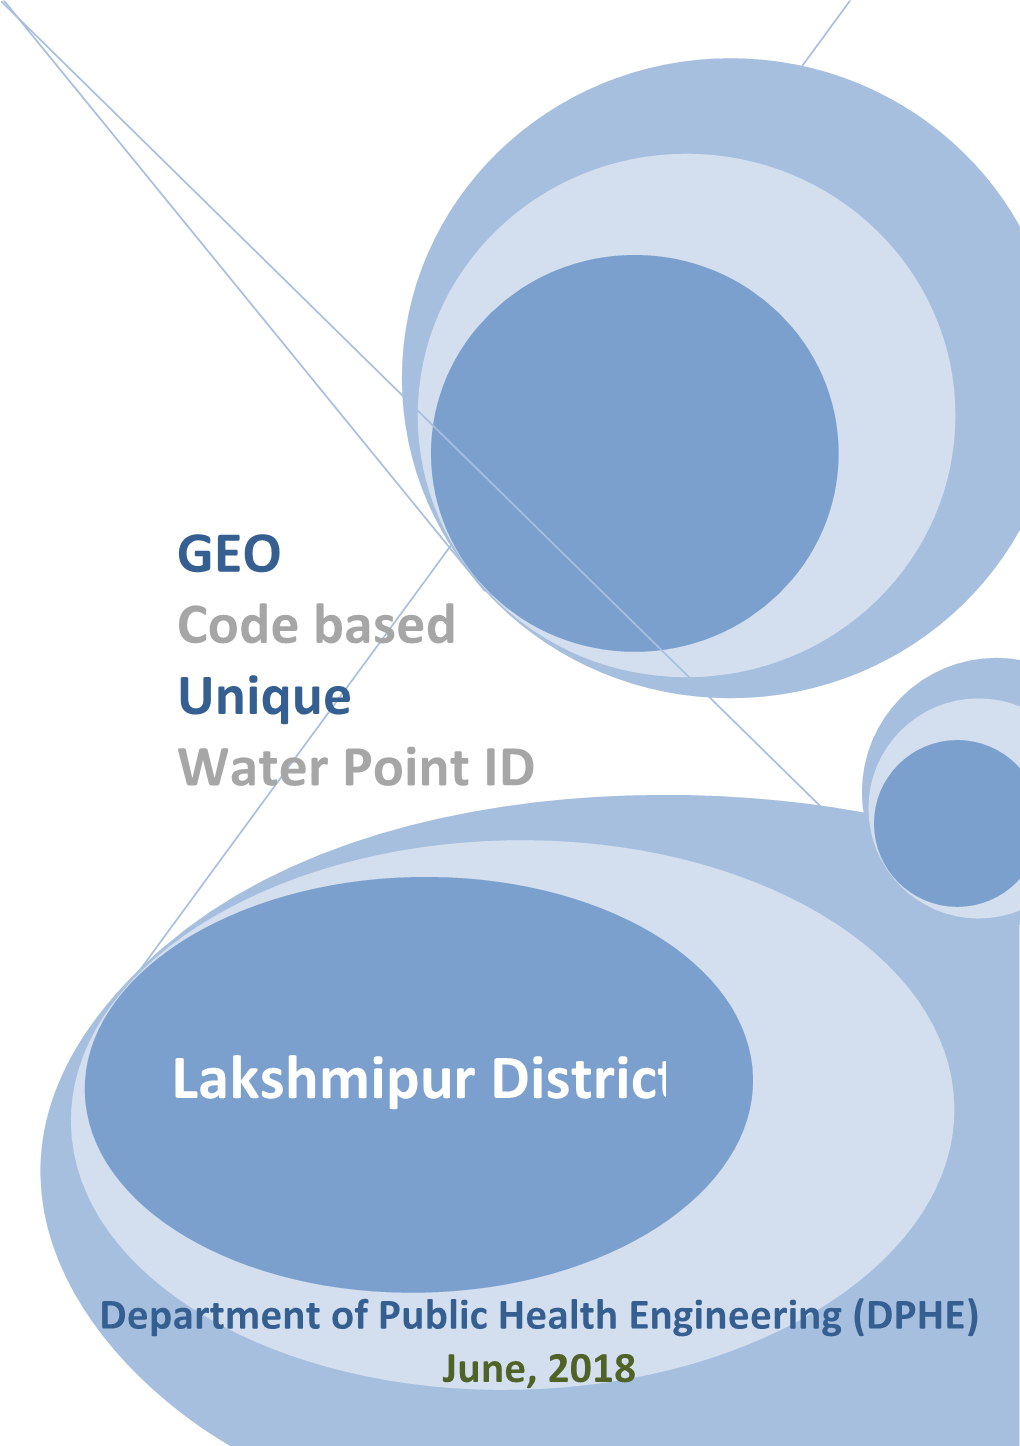 Lakshmipur District